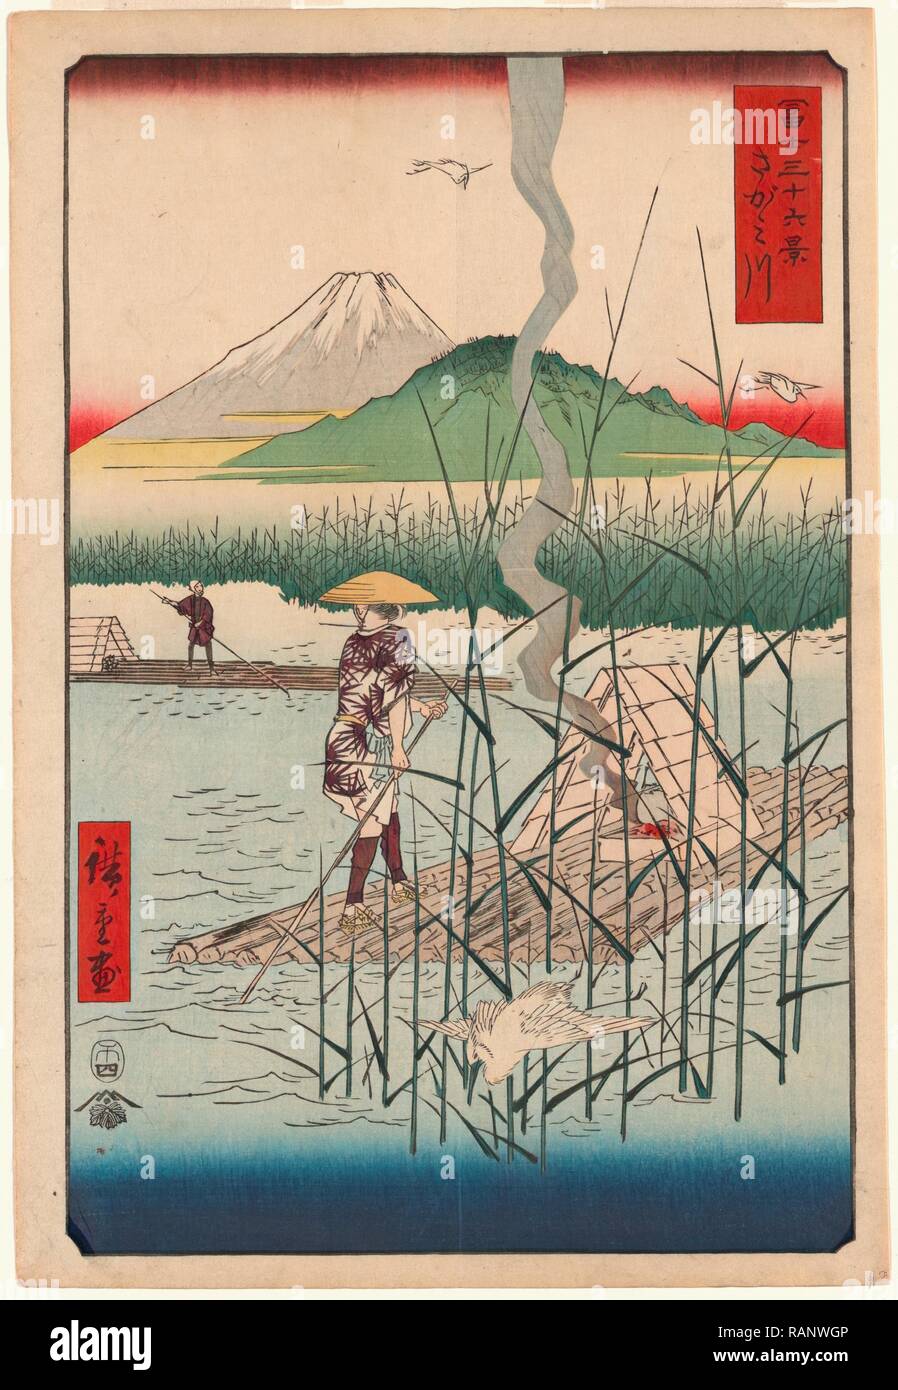 [Sagamigawa], Sagami River. [Tokyo]: Tsuta-Ya Kichizo, 1858., 1 Print: Woodcut, Color, 35.9 X 24.7, Japanese Print reimagined Stock Photo